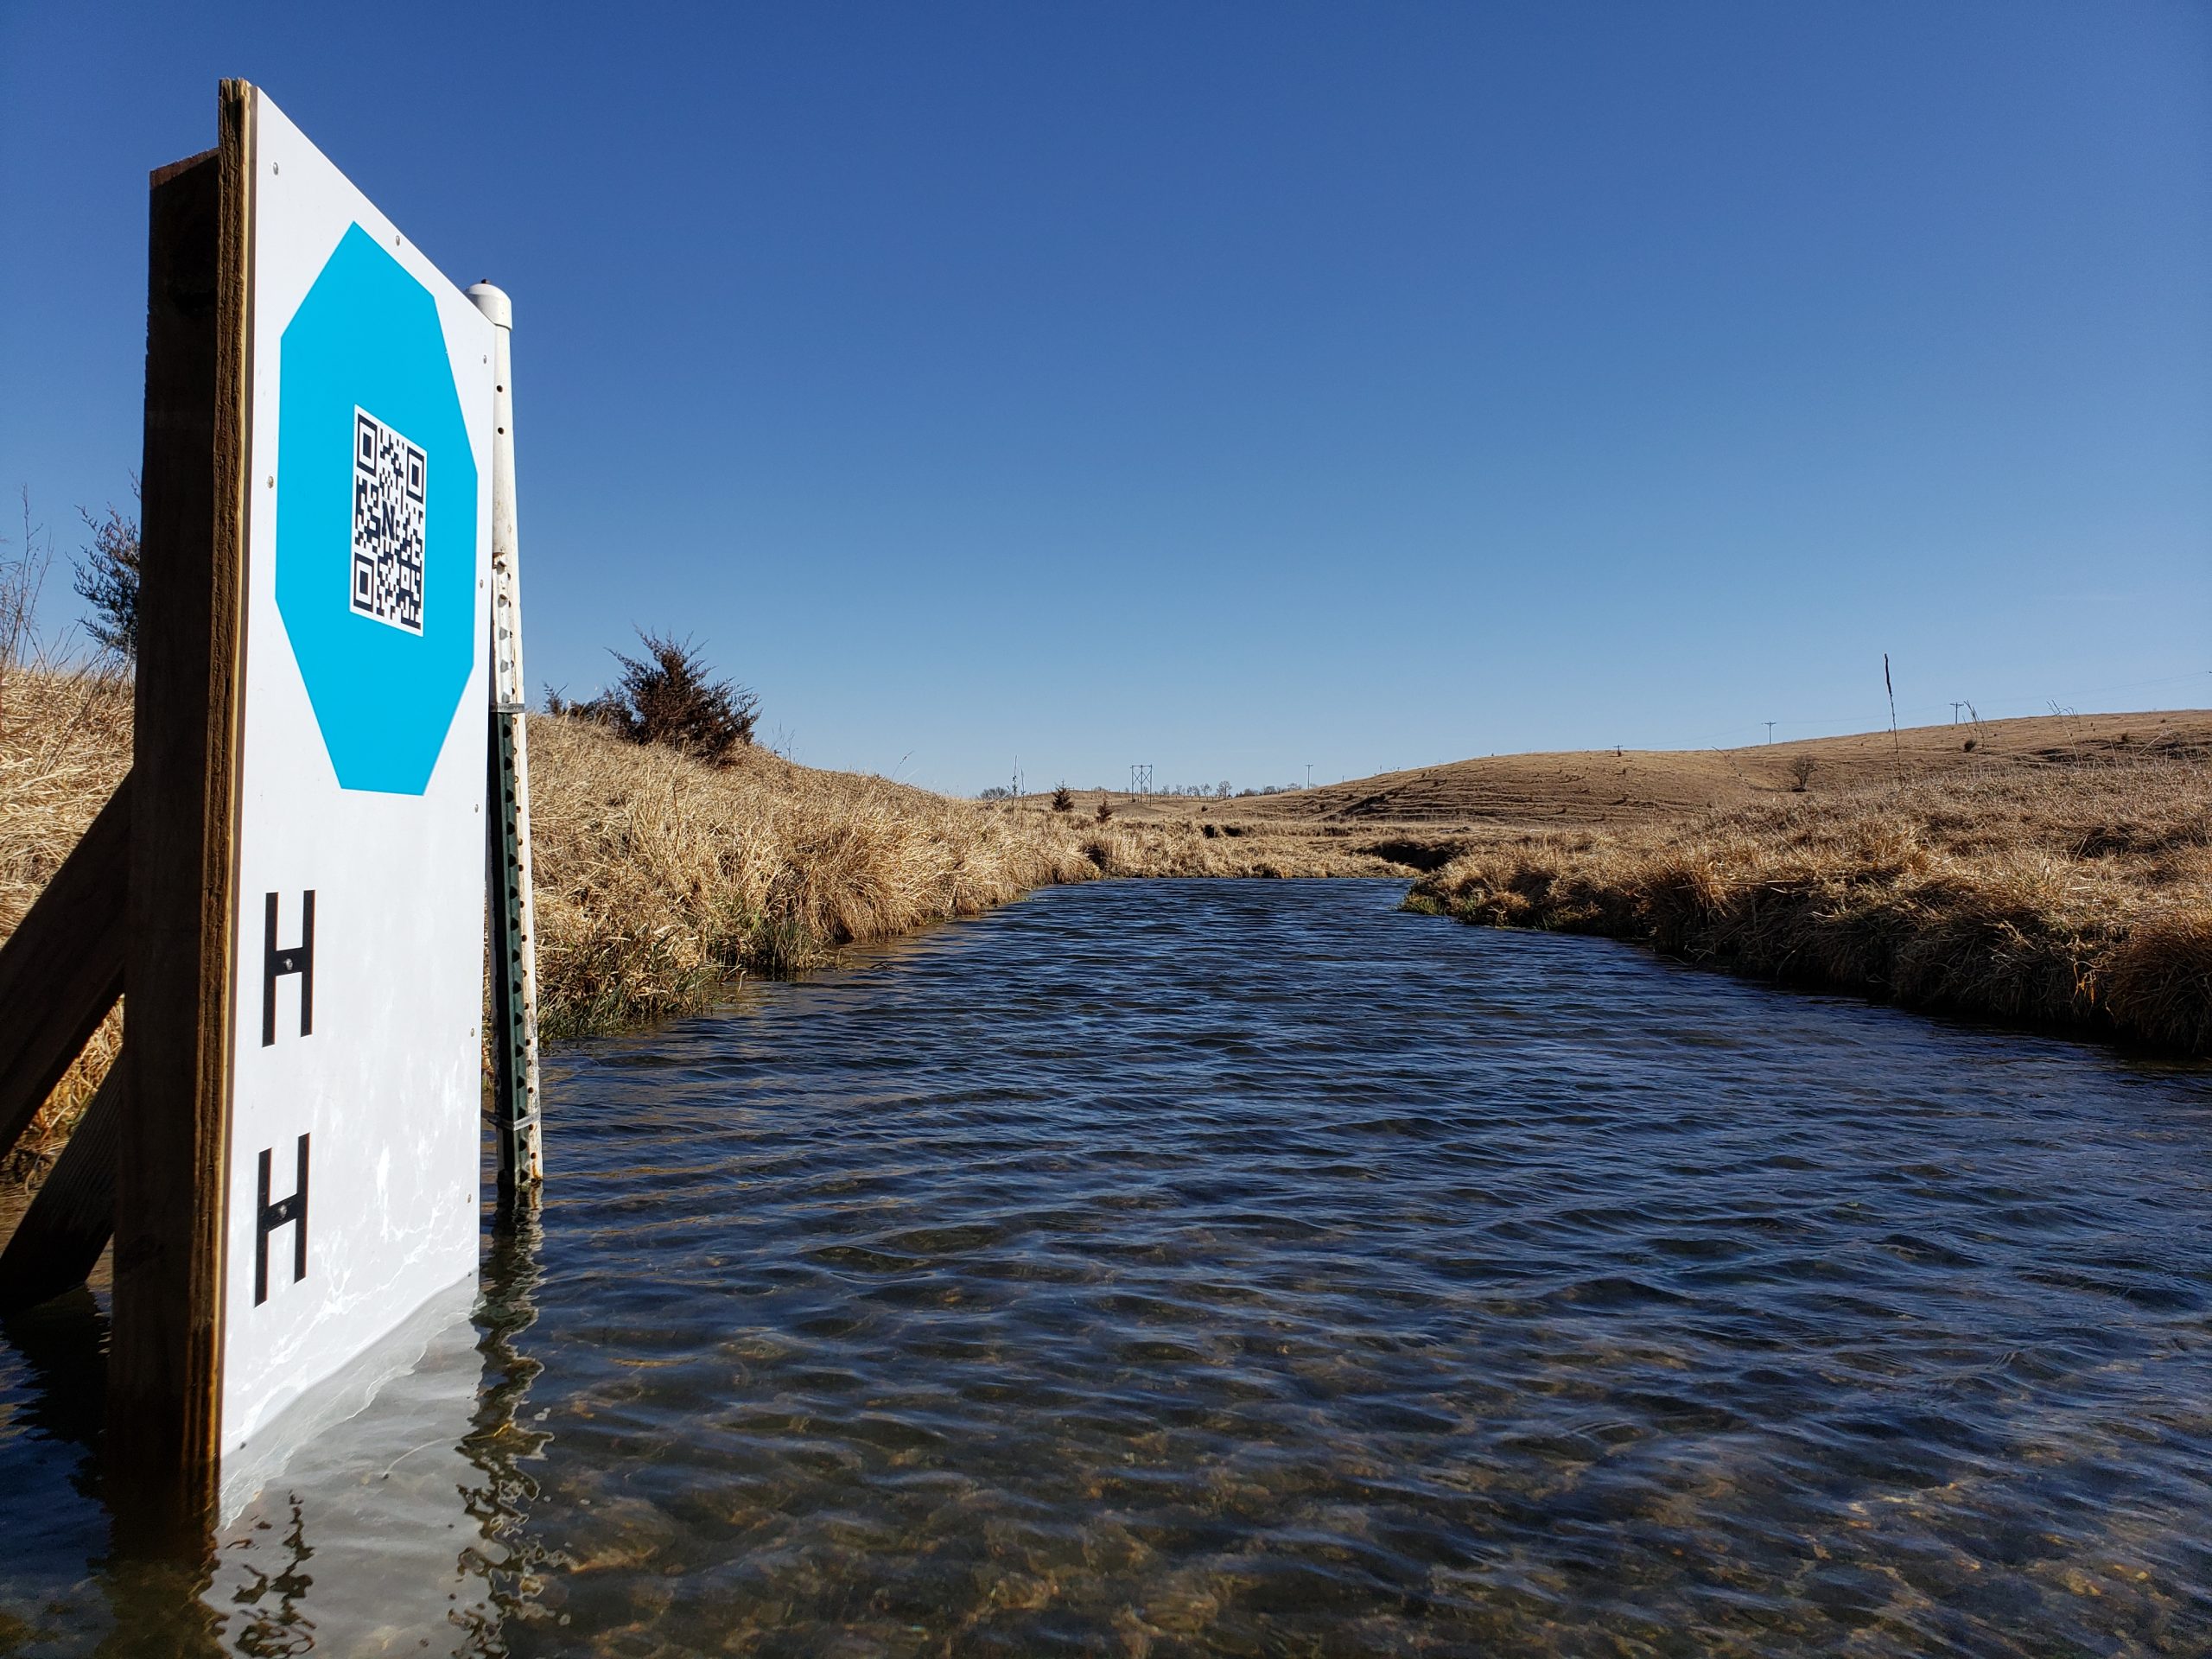 Stop sign target for GaugeCam image-based water level measurement system